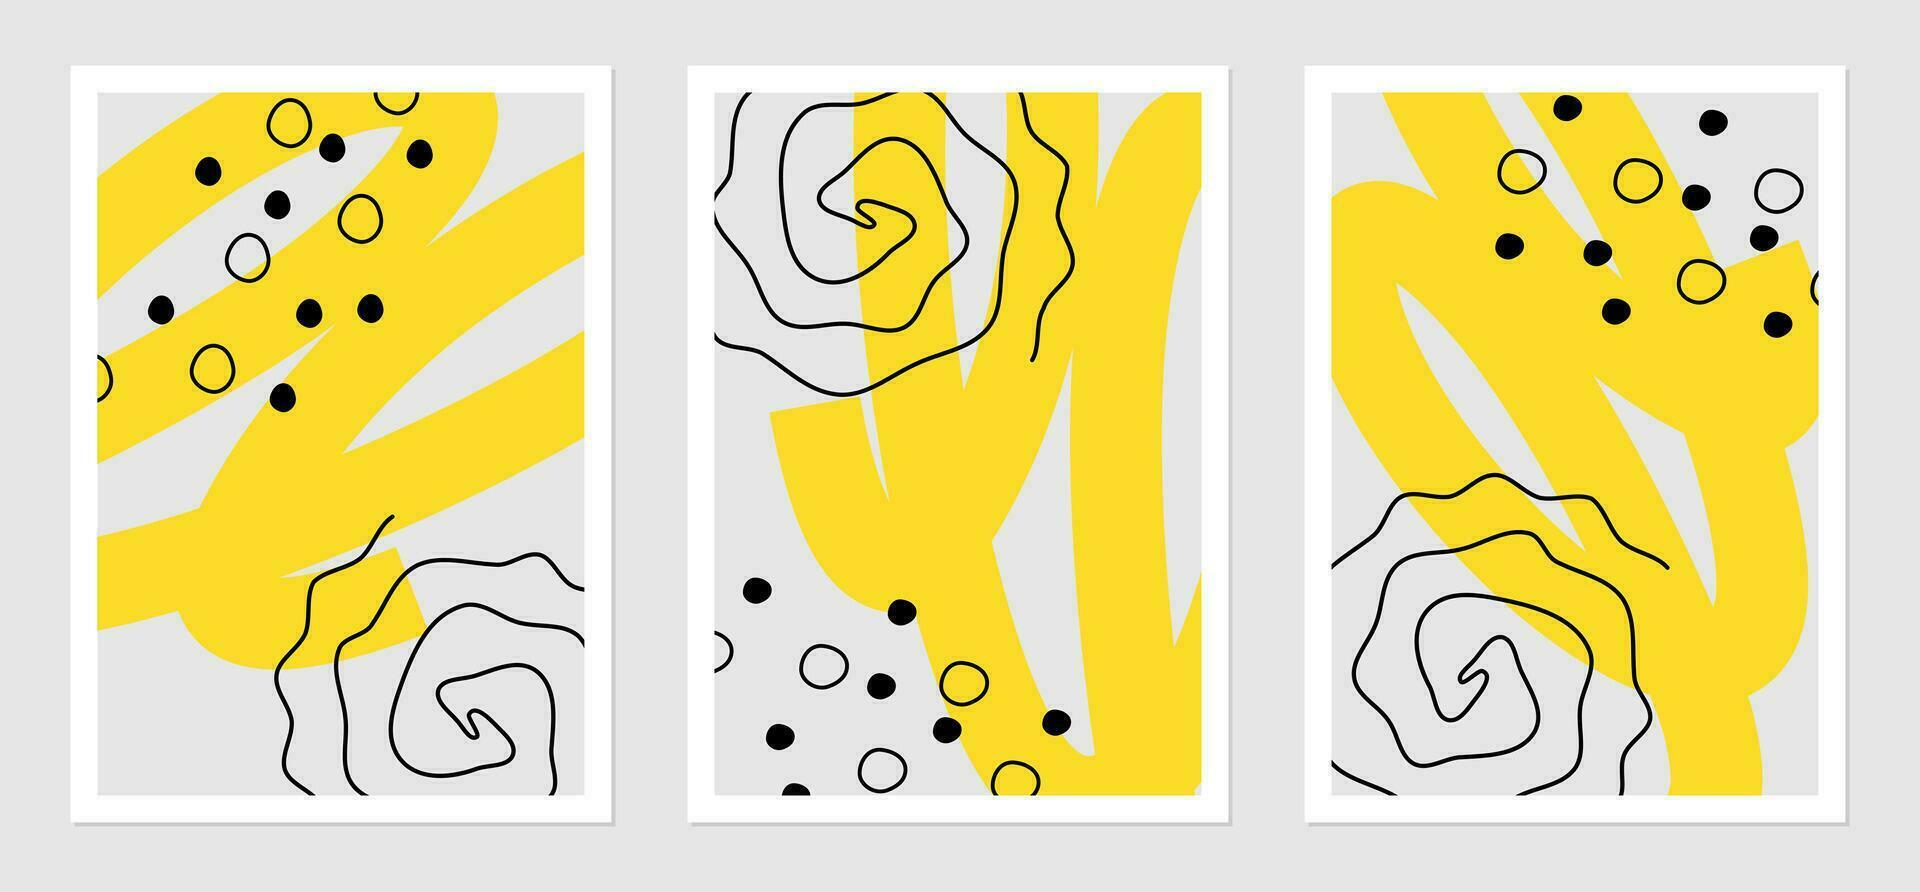 posters met abstract vormen. vector illustratie van ronde vlekken, spiralen en kronkels. interieur ontwerp decoratie.